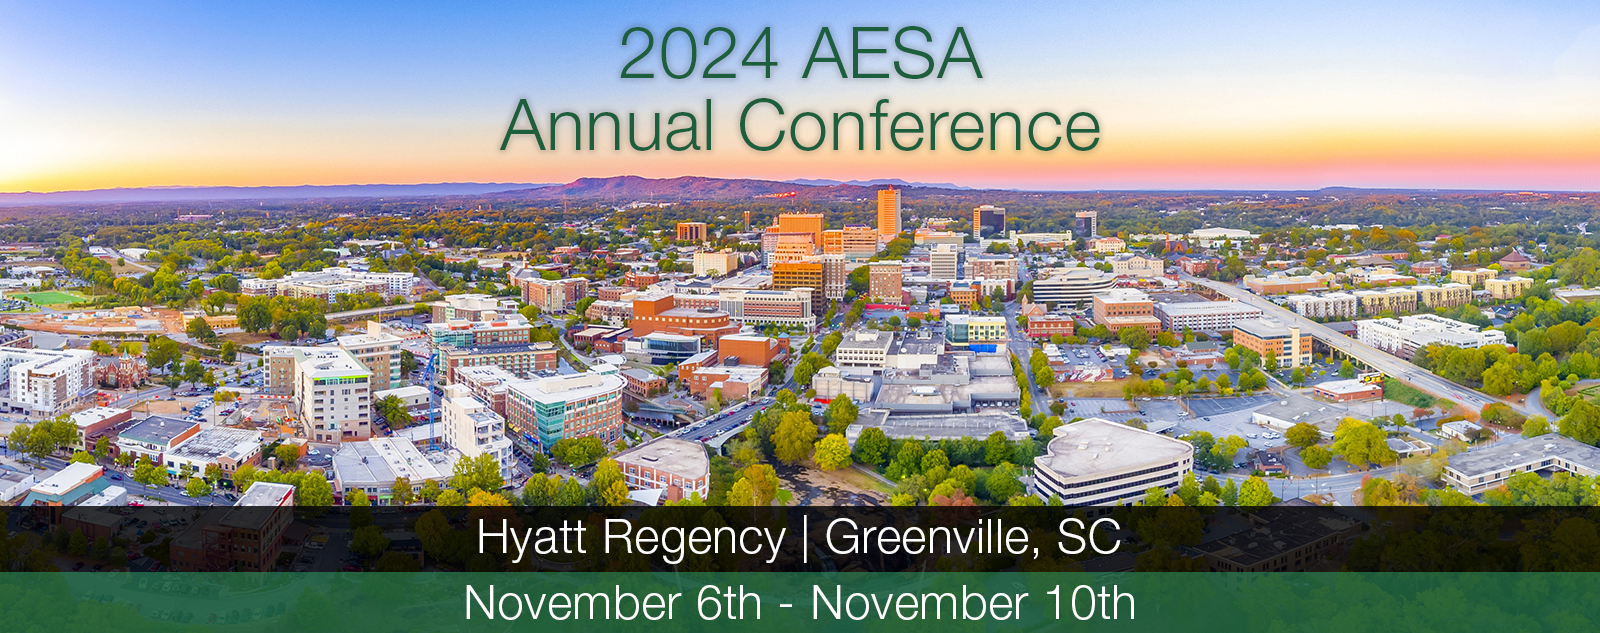 AESA 2023 Annual Conference, Greenville SC Hyatt Regency, Nov 6th thru Nov 10th